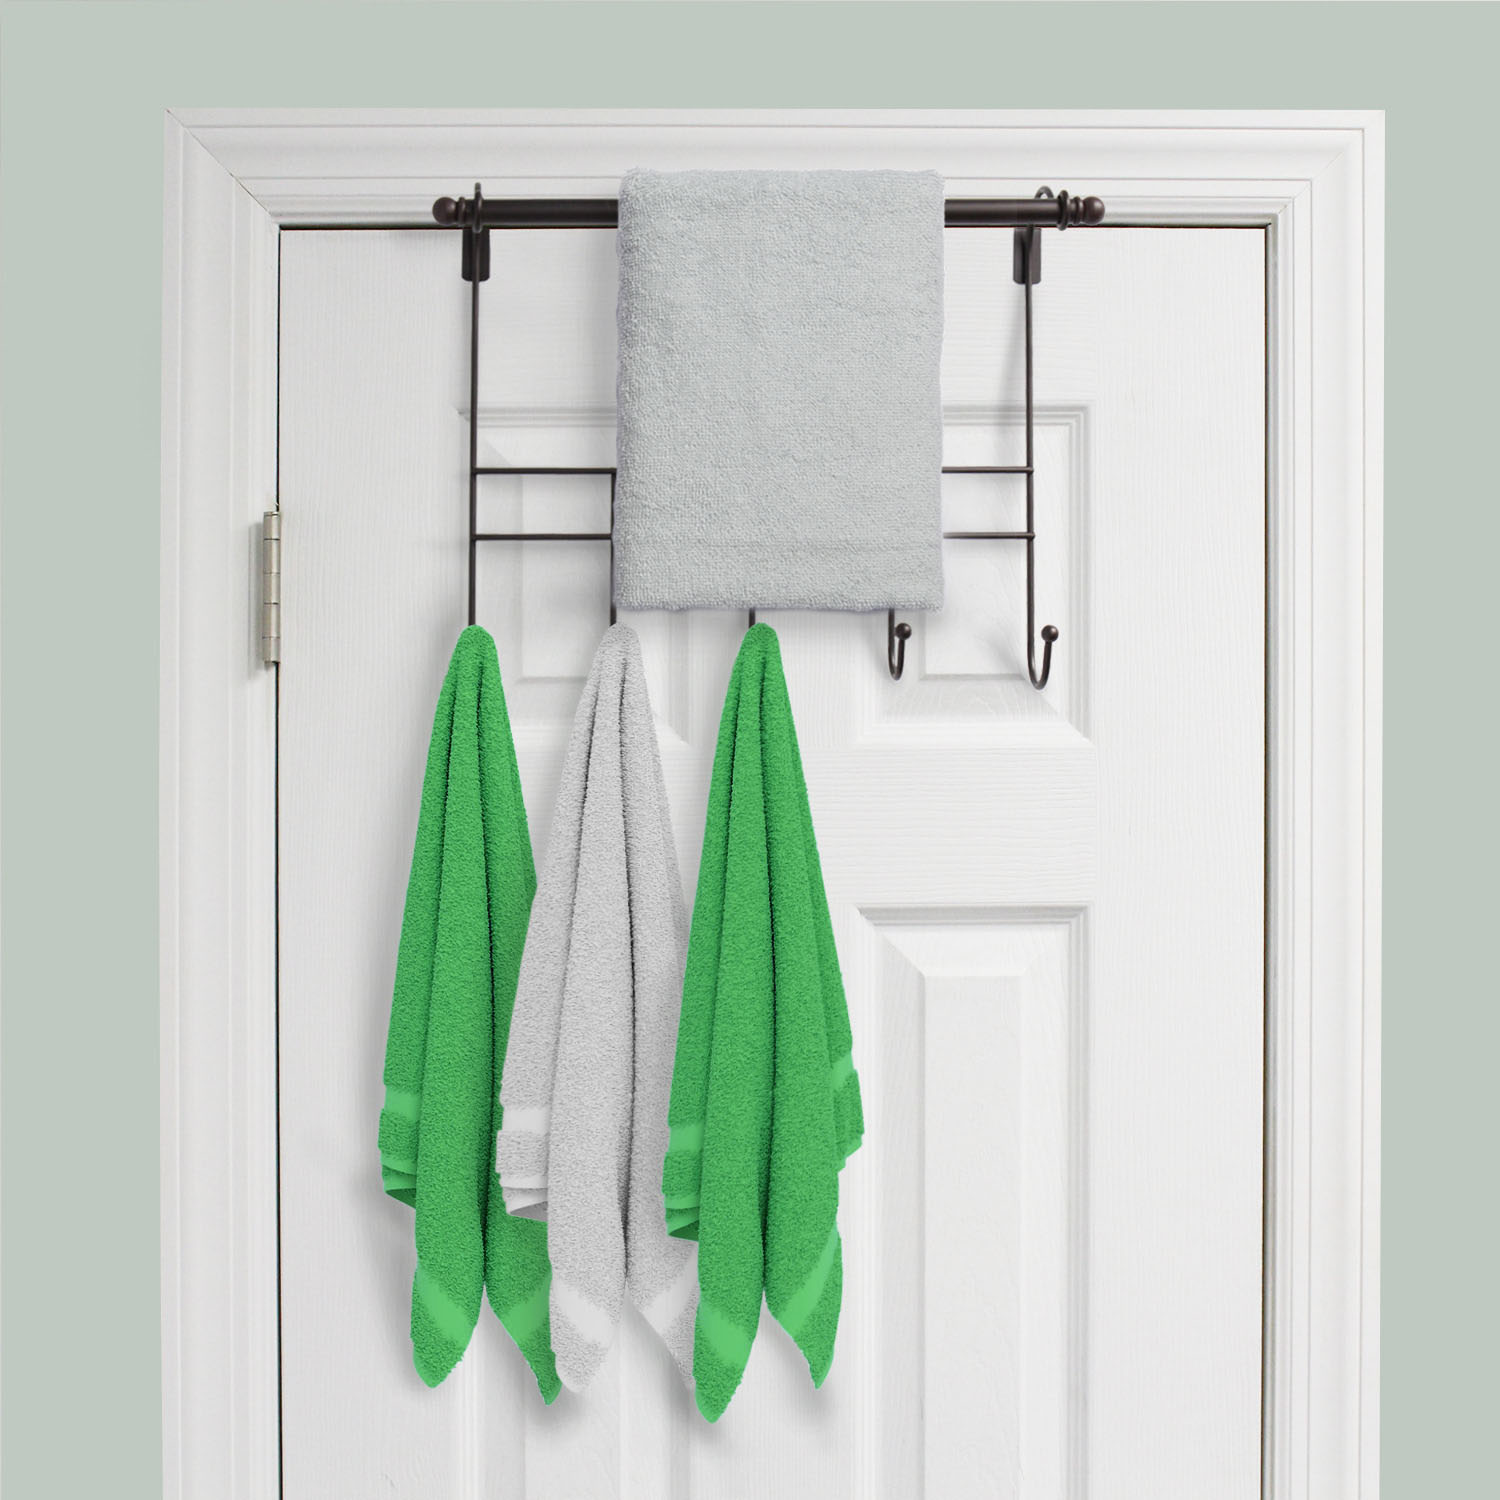 Towel Door Hanger includes Towel Rack Bar, 5 Towel Hooks, No Assembly Required, 17 Inches Wide, 2 Inch Over the Door Hook Space, Bronze